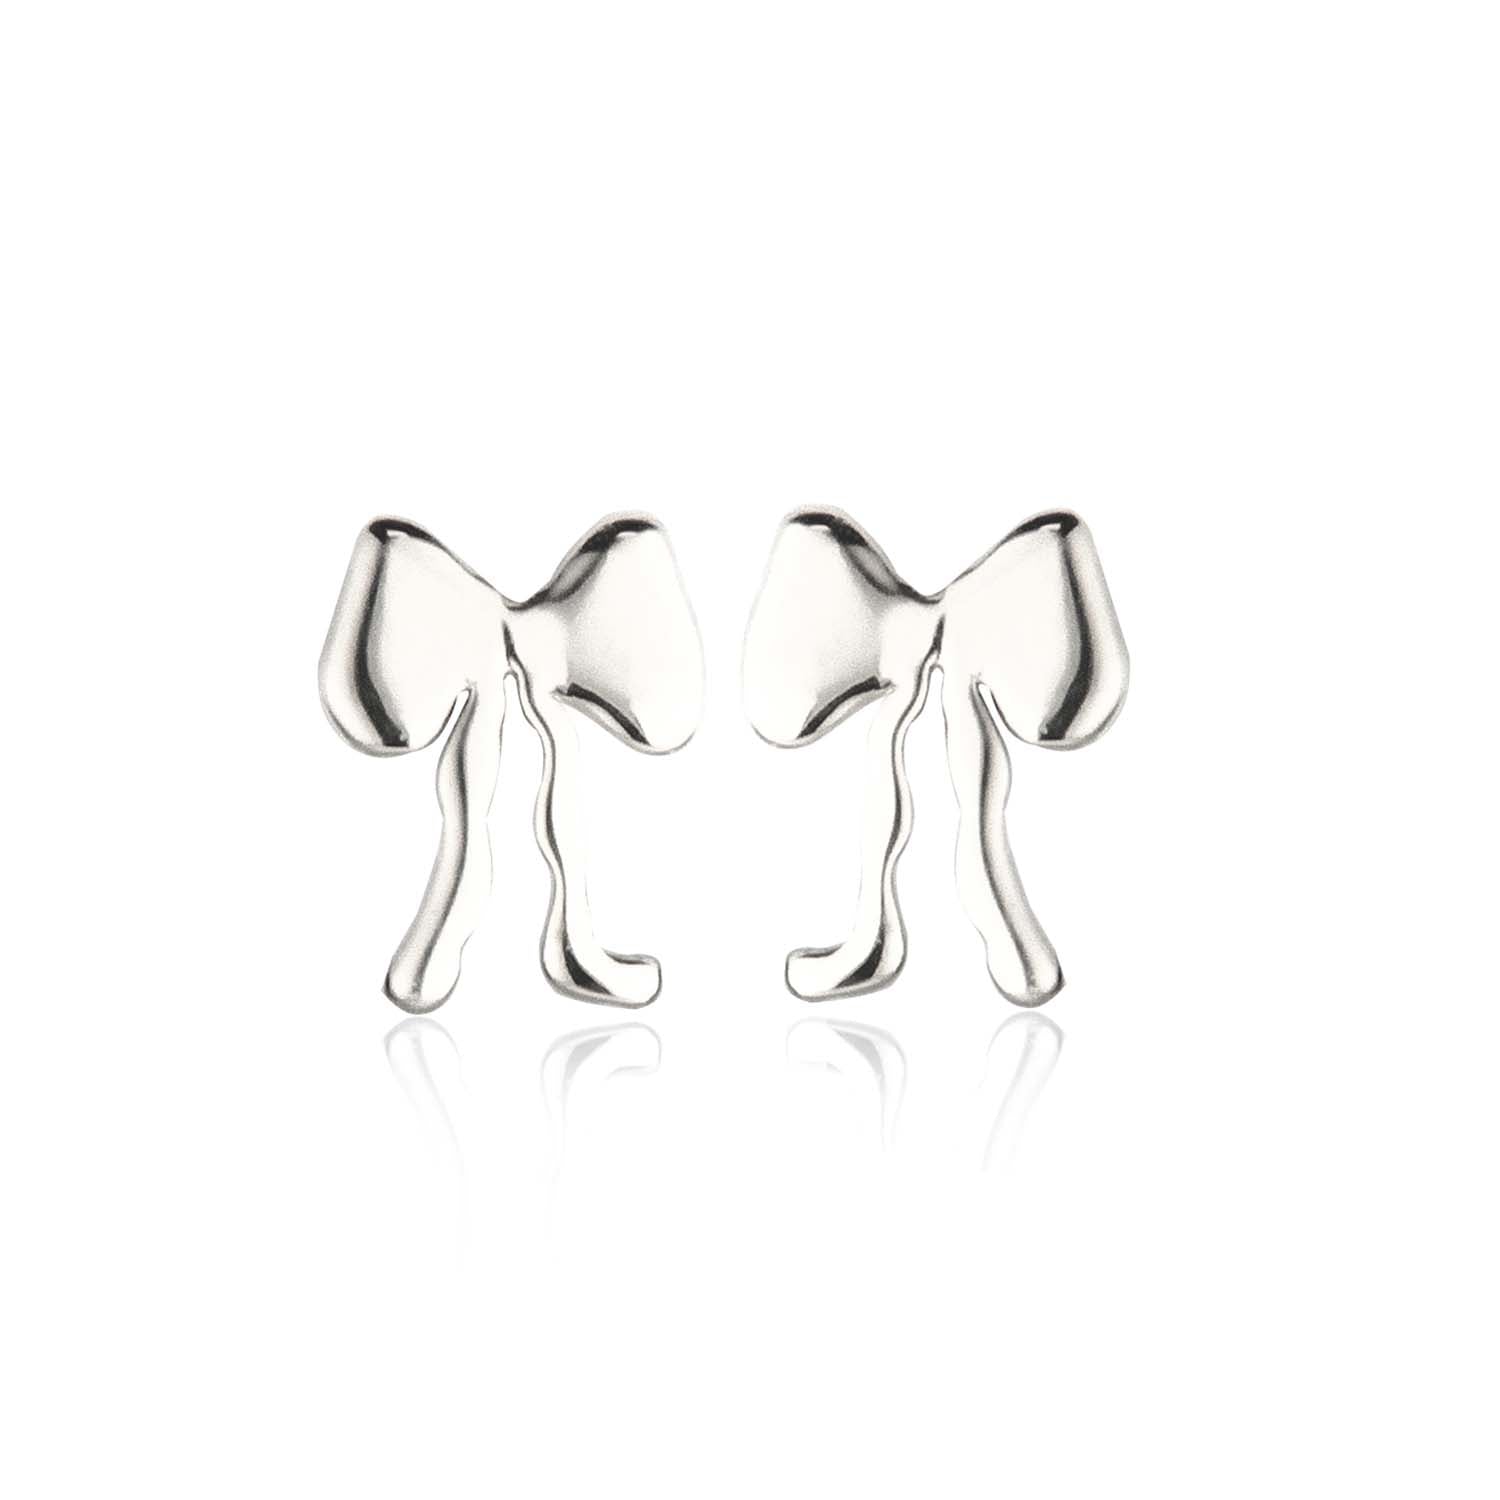 Billede af Jeberg Jewellery - Petite Bow Plain ørestikker Sølv